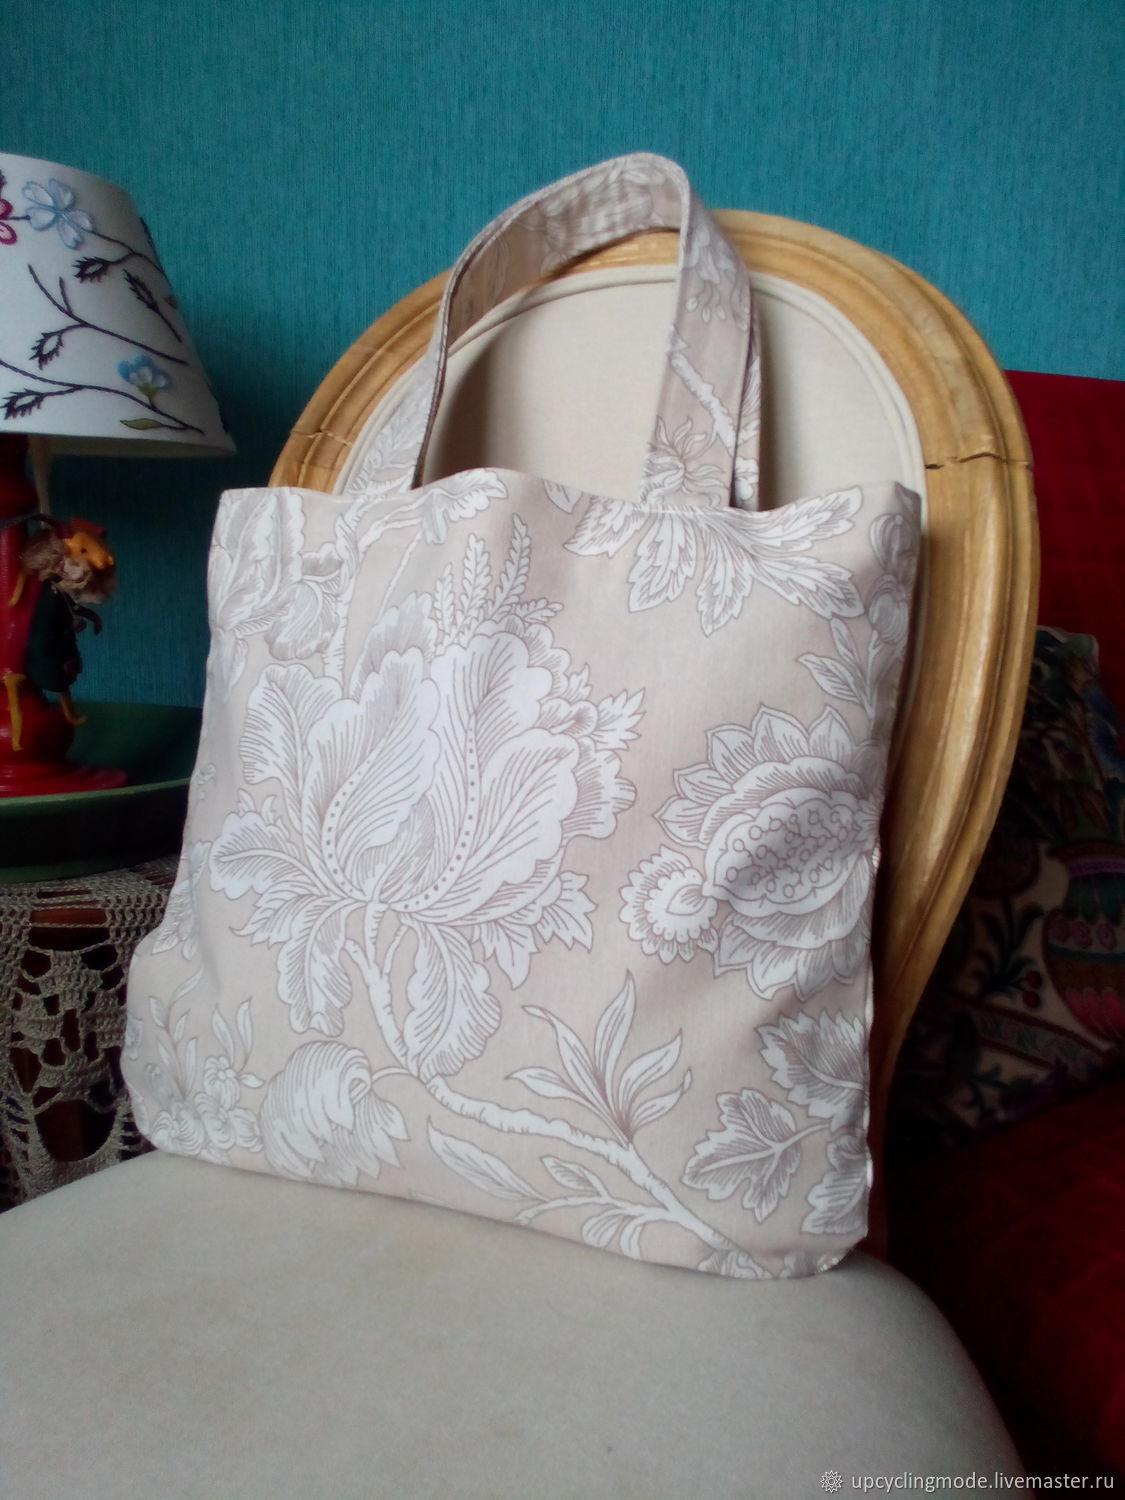 Текстильная сумочка-авоська для покупок в бежевом цвете. Экосумка